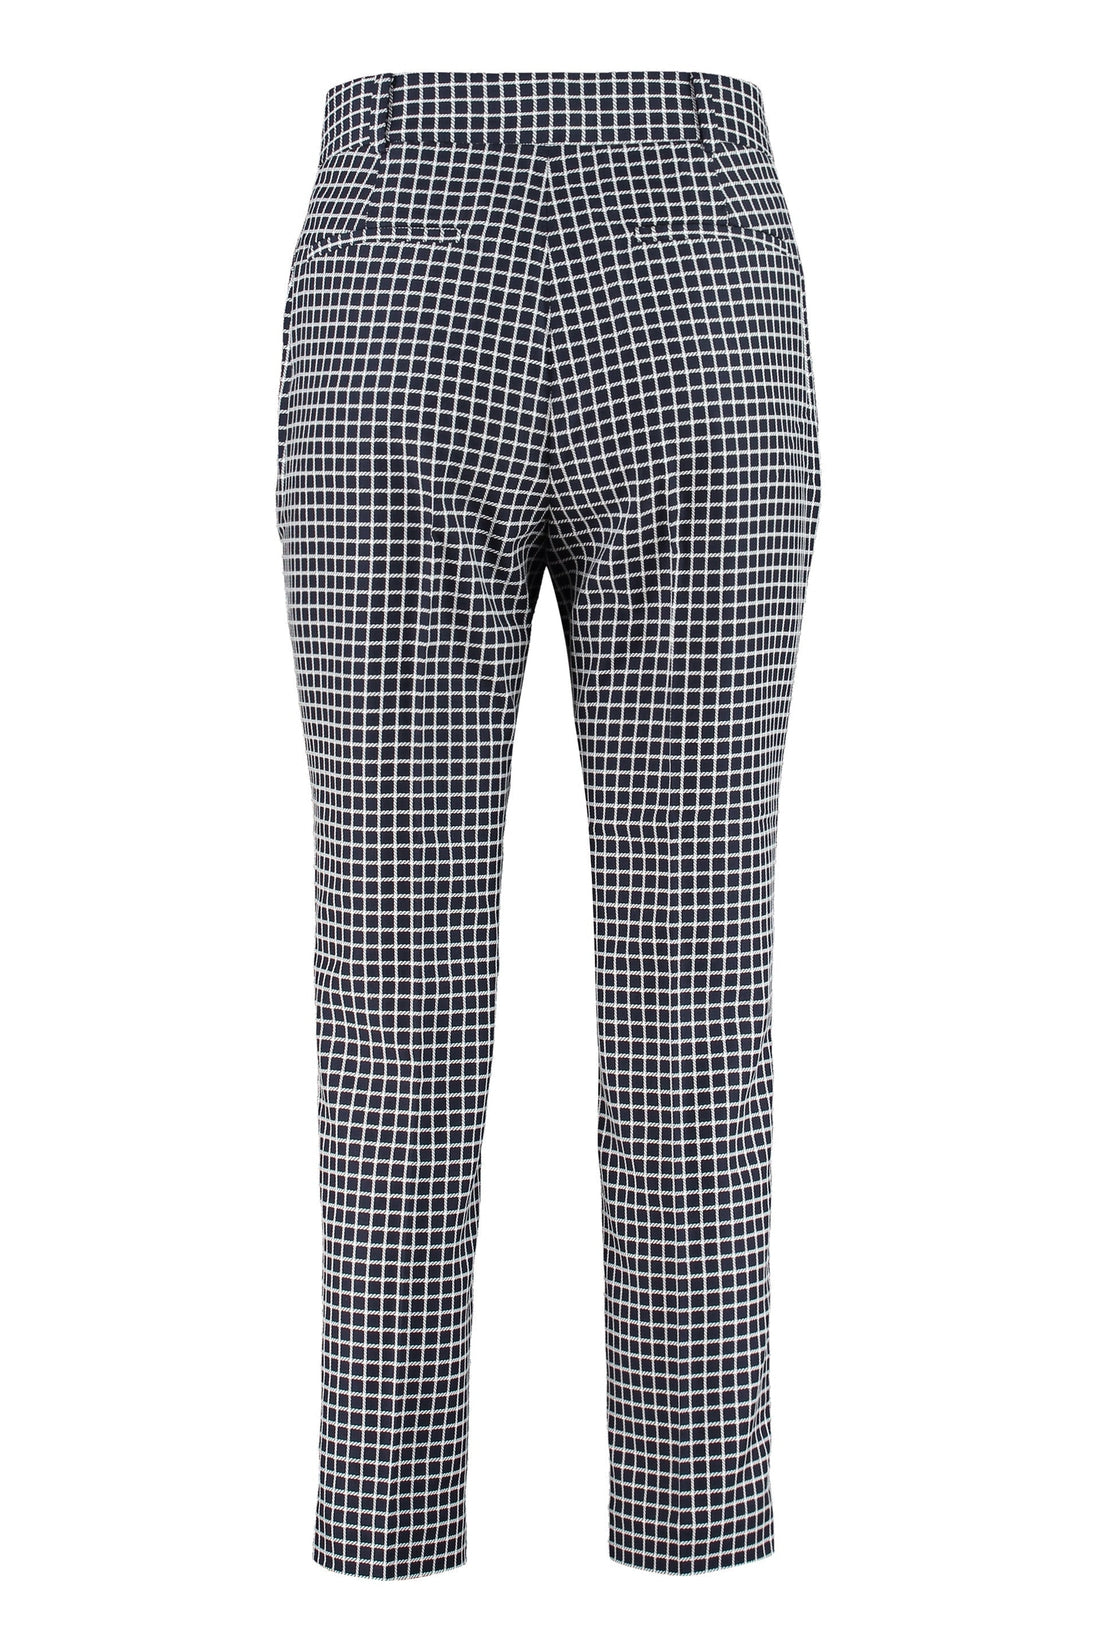 MICHAEL MICHAEL KORS-OUTLET-SALE-Tailored trousers-ARCHIVIST